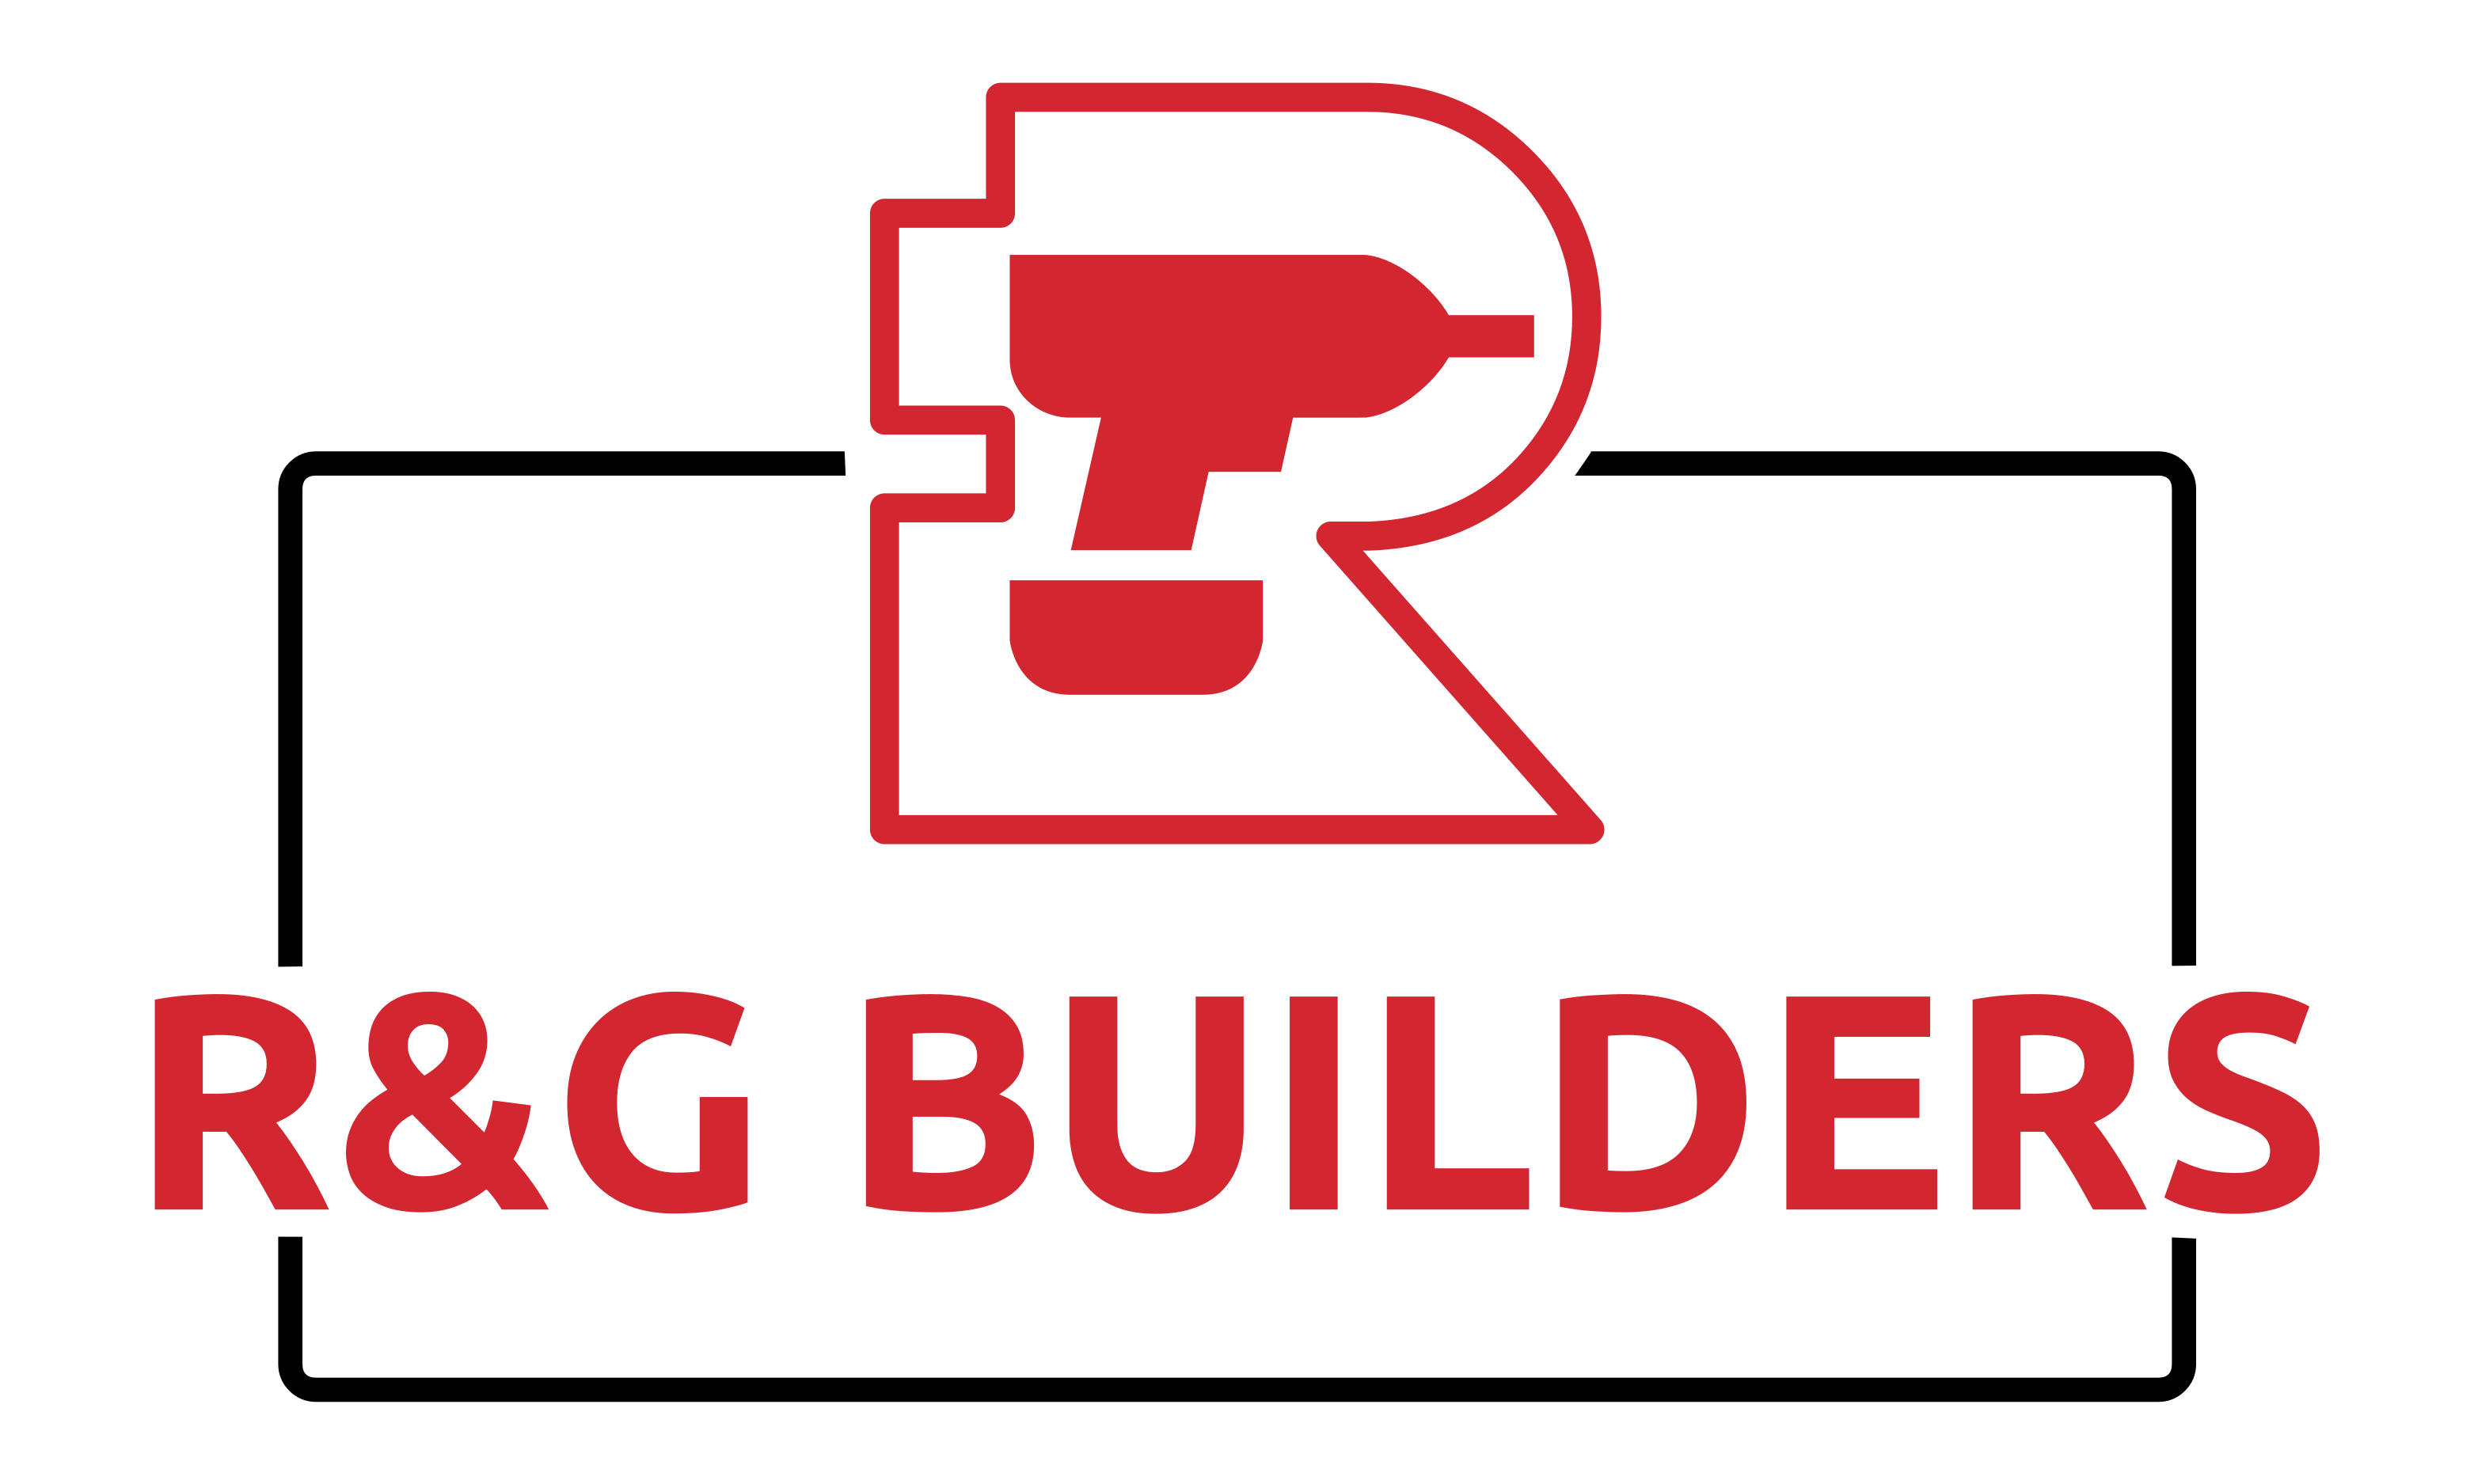 R&G Builders